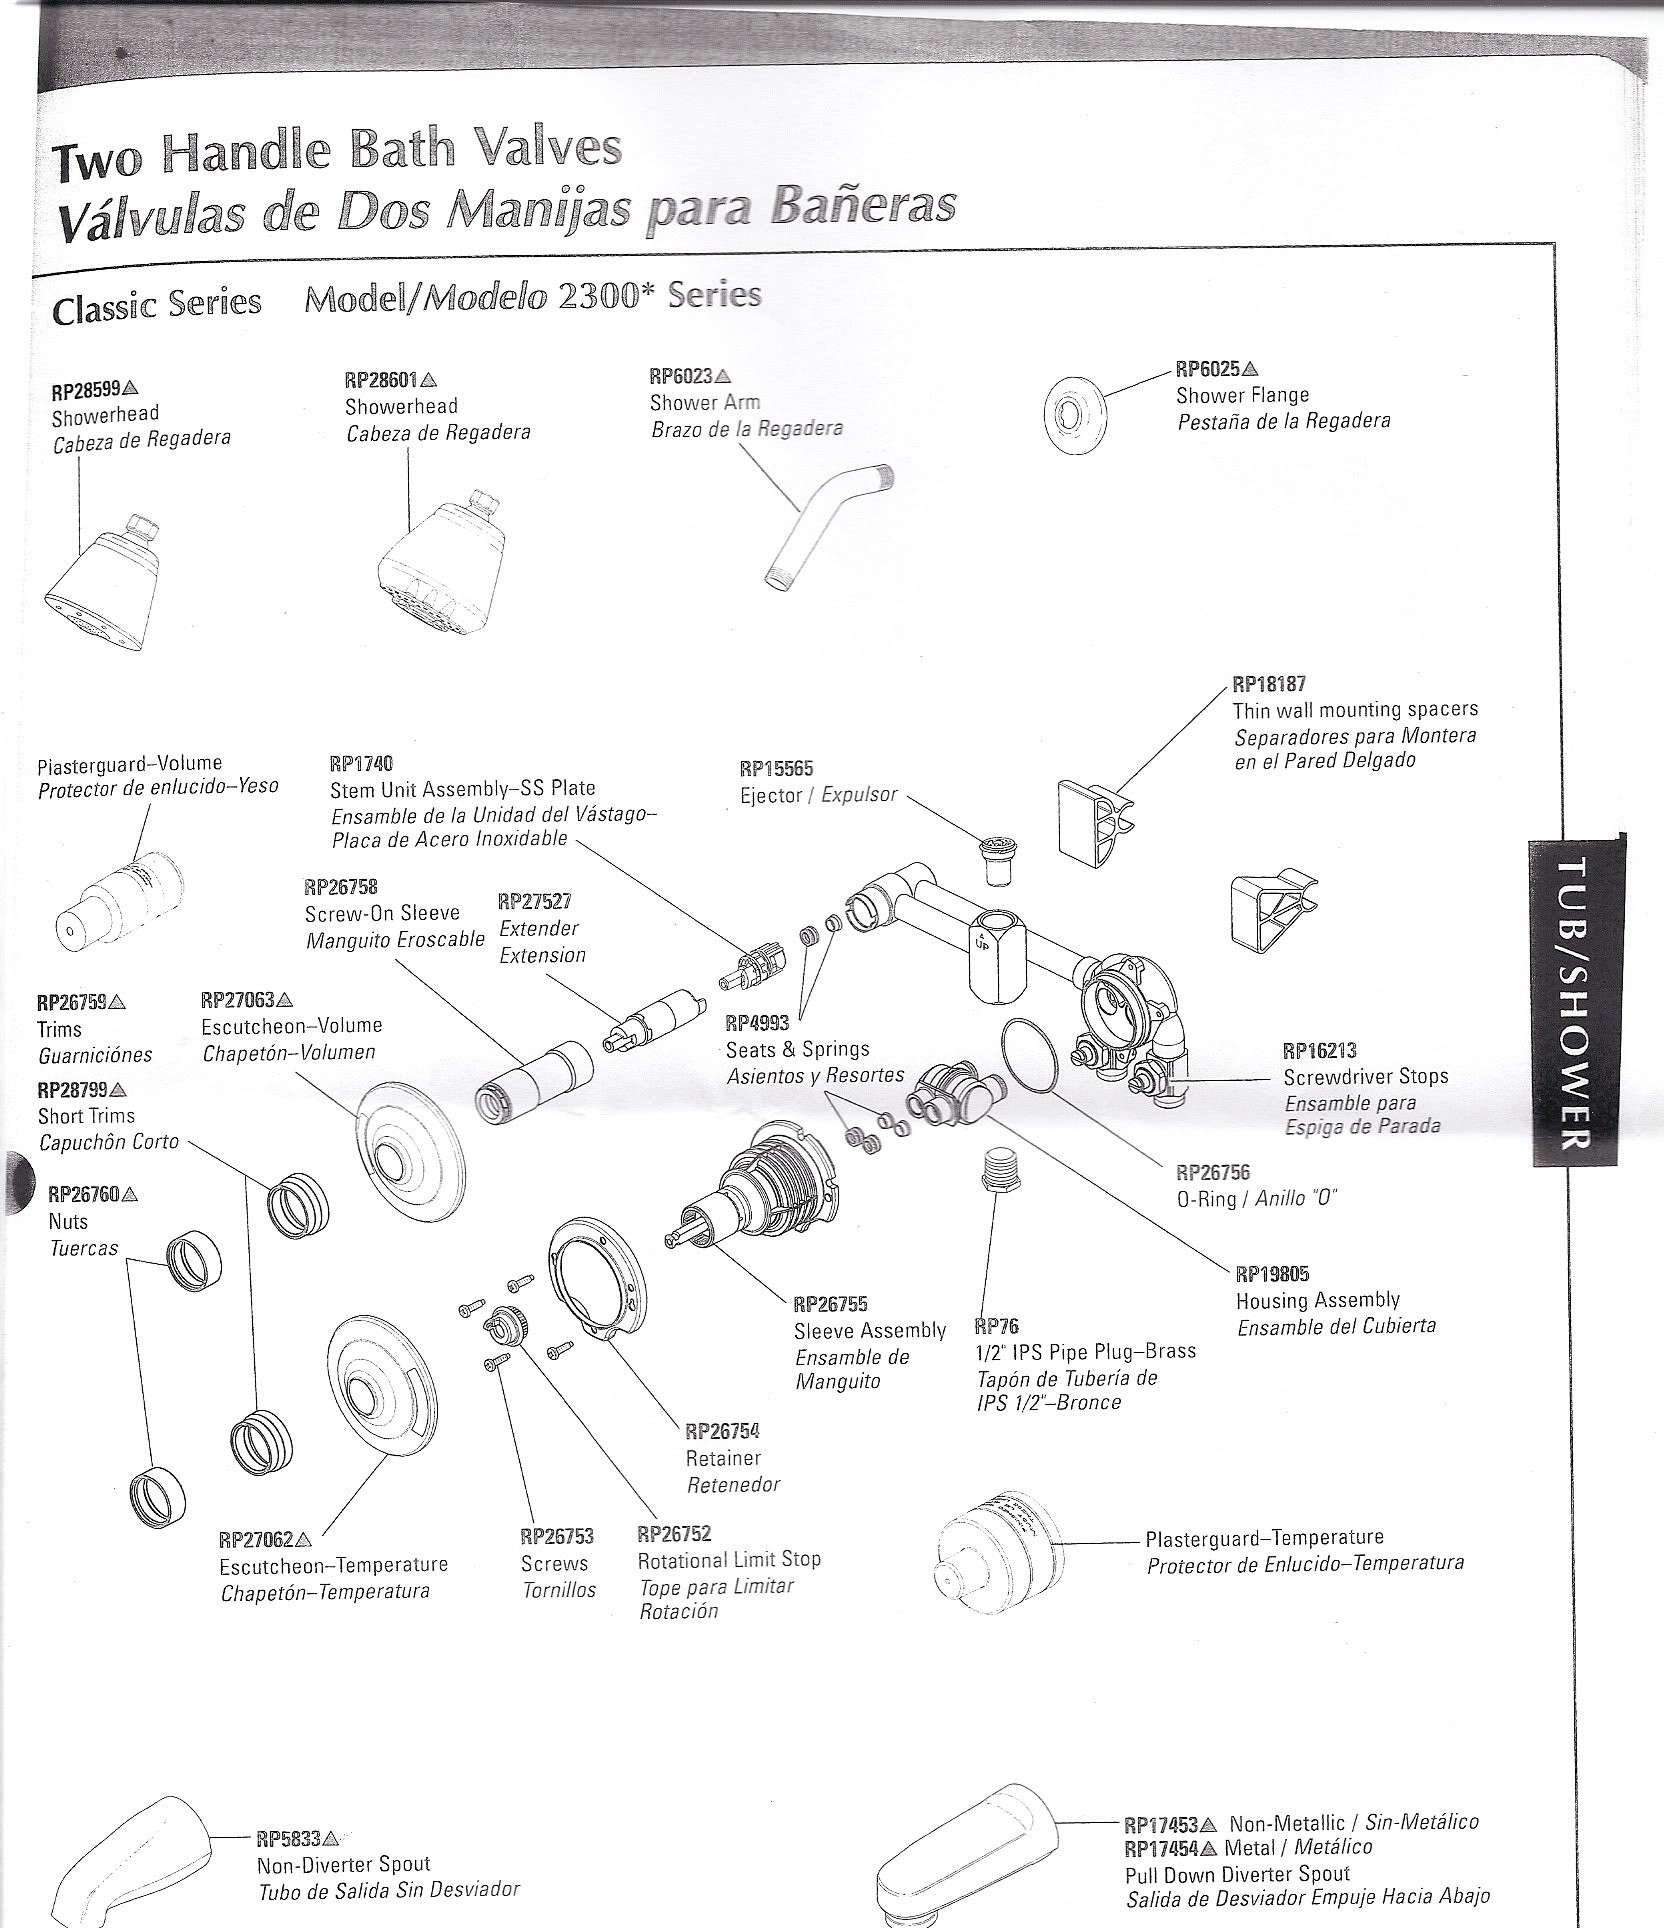 Delta Shower Faucet Parts Diagram Delta Shower Faucet Parts Diagram Popularly Well Illustration Of Delta Shower Faucet Parts Diagram